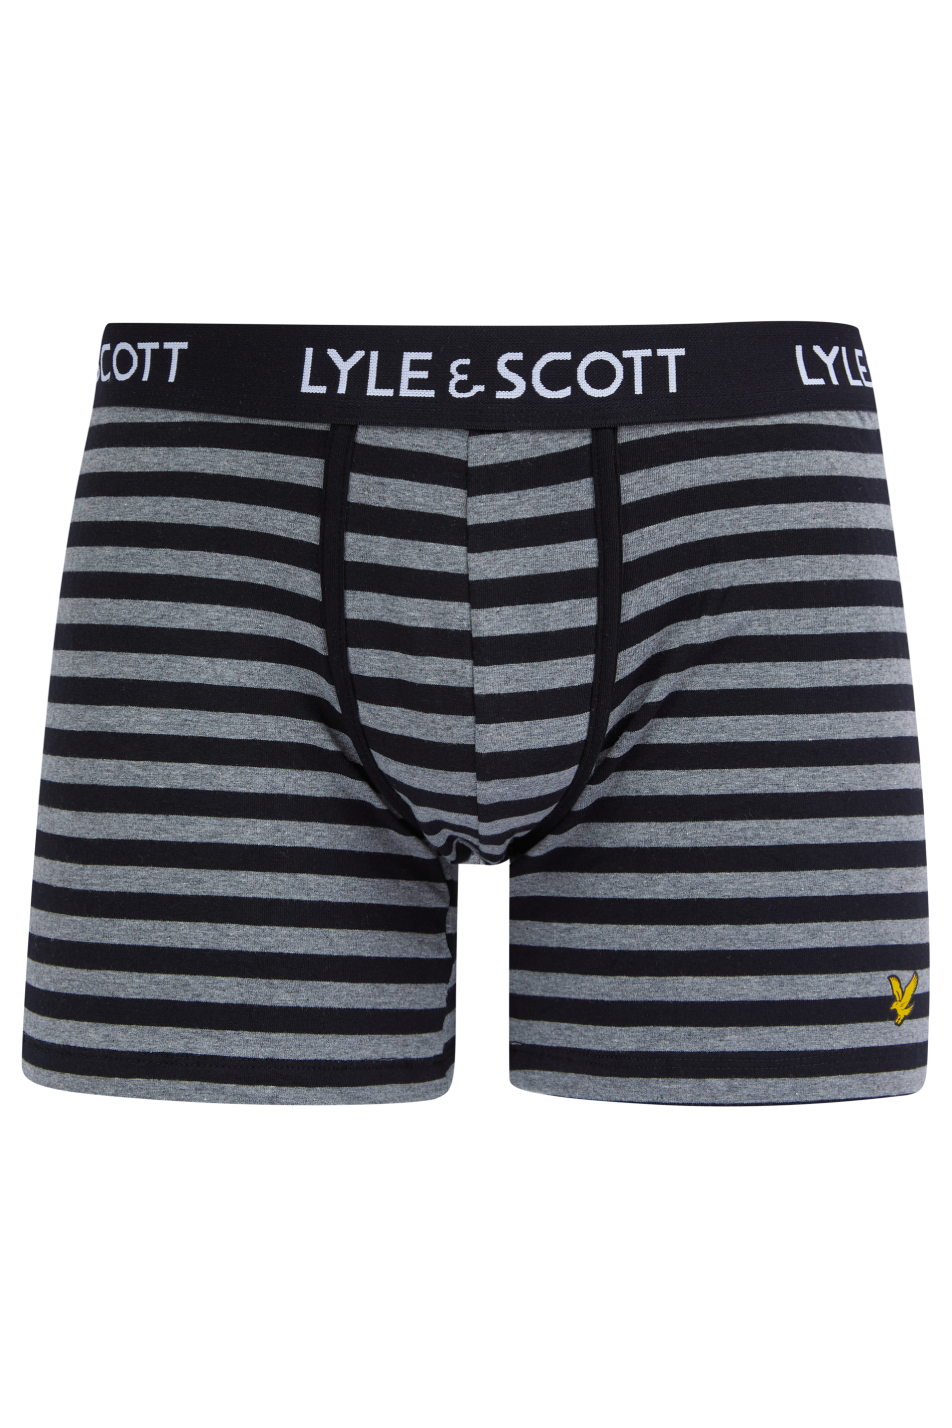 Lyle & Scott 4 Pack Men's Underwear Gift Set